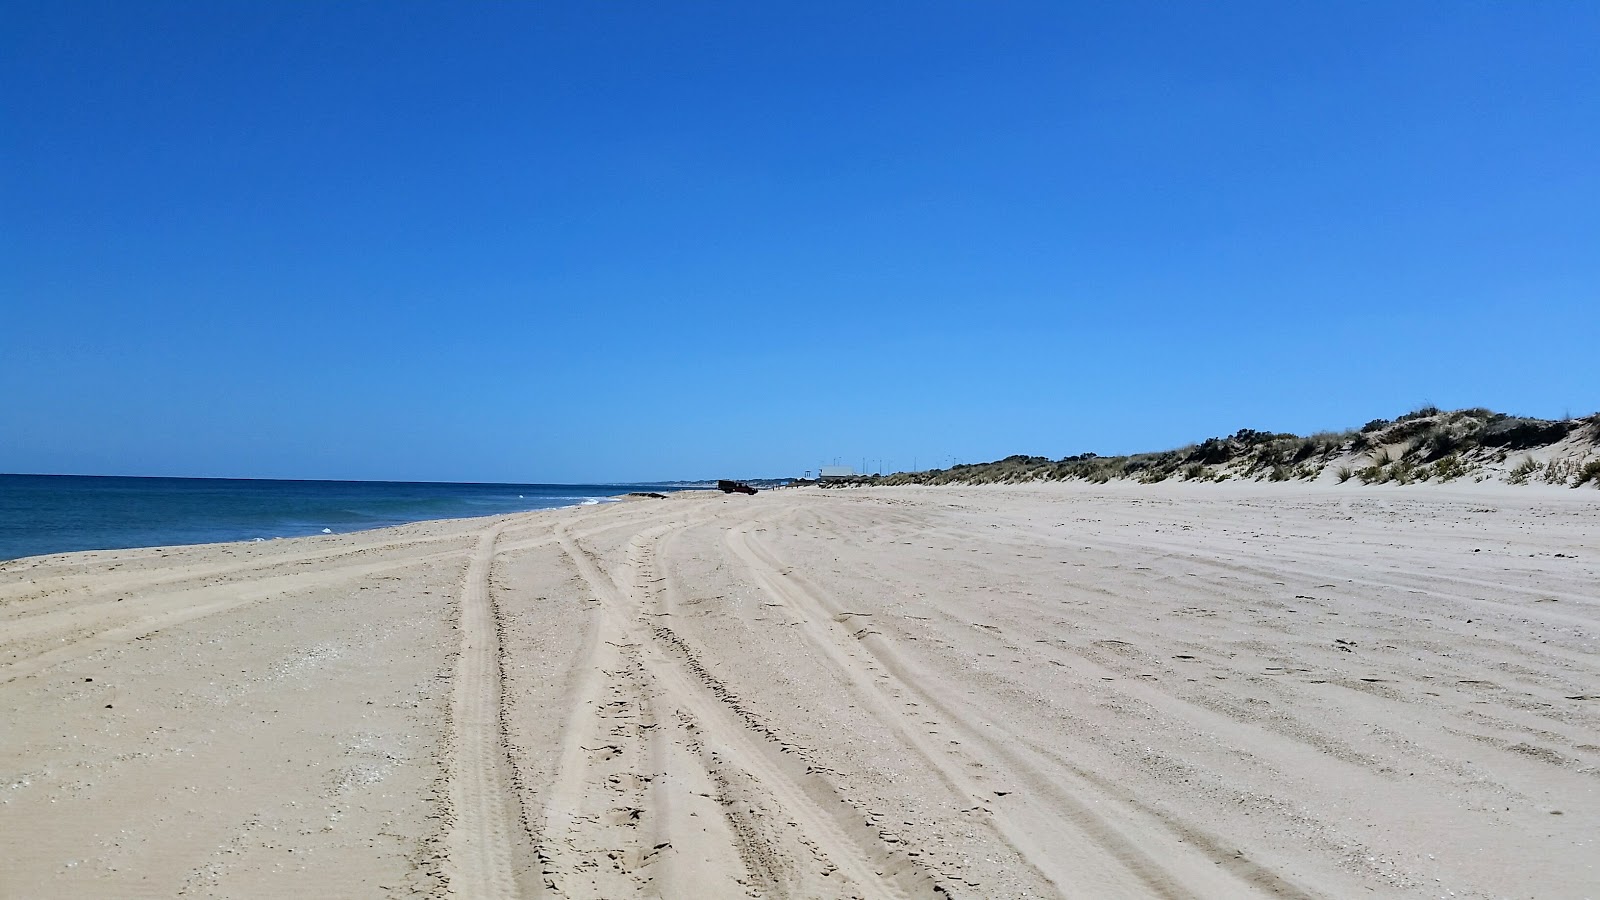 Zdjęcie Binningup Beach z powierzchnią jasny piasek